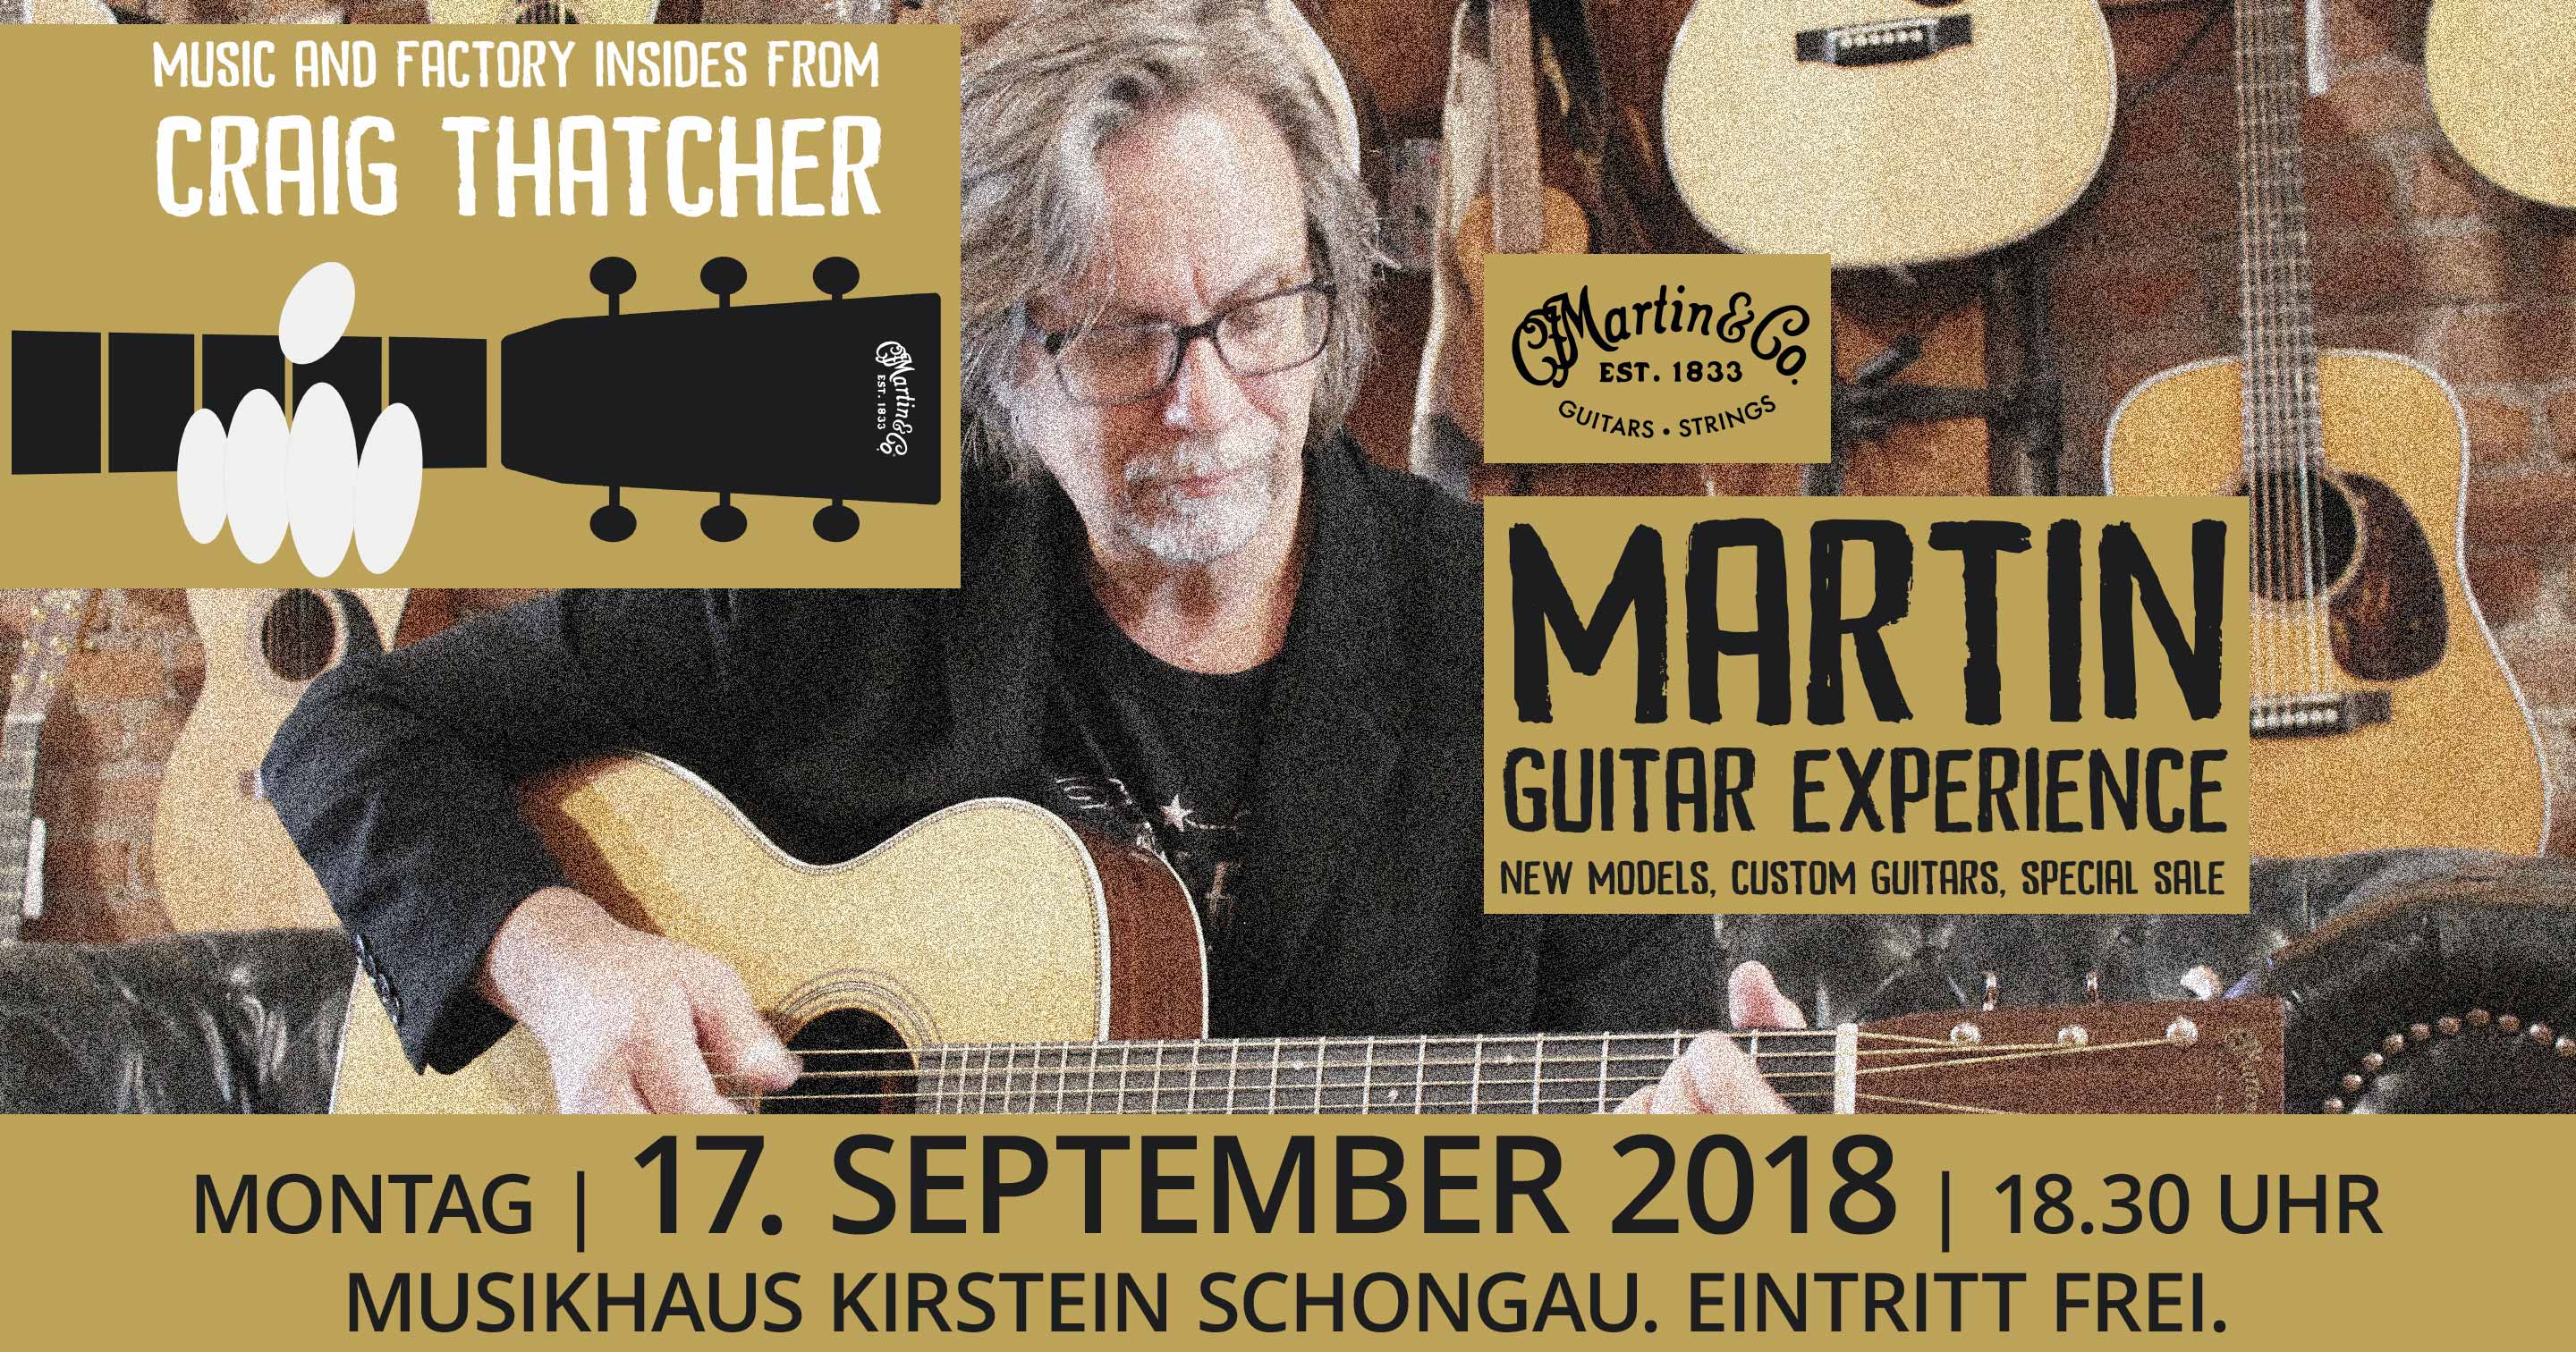 Am 17. September 2018 macht die Martin Guitars Clinic Tour 2018 mit Craig Thatcher Station im Musikhaus Kirstein in Schongau.